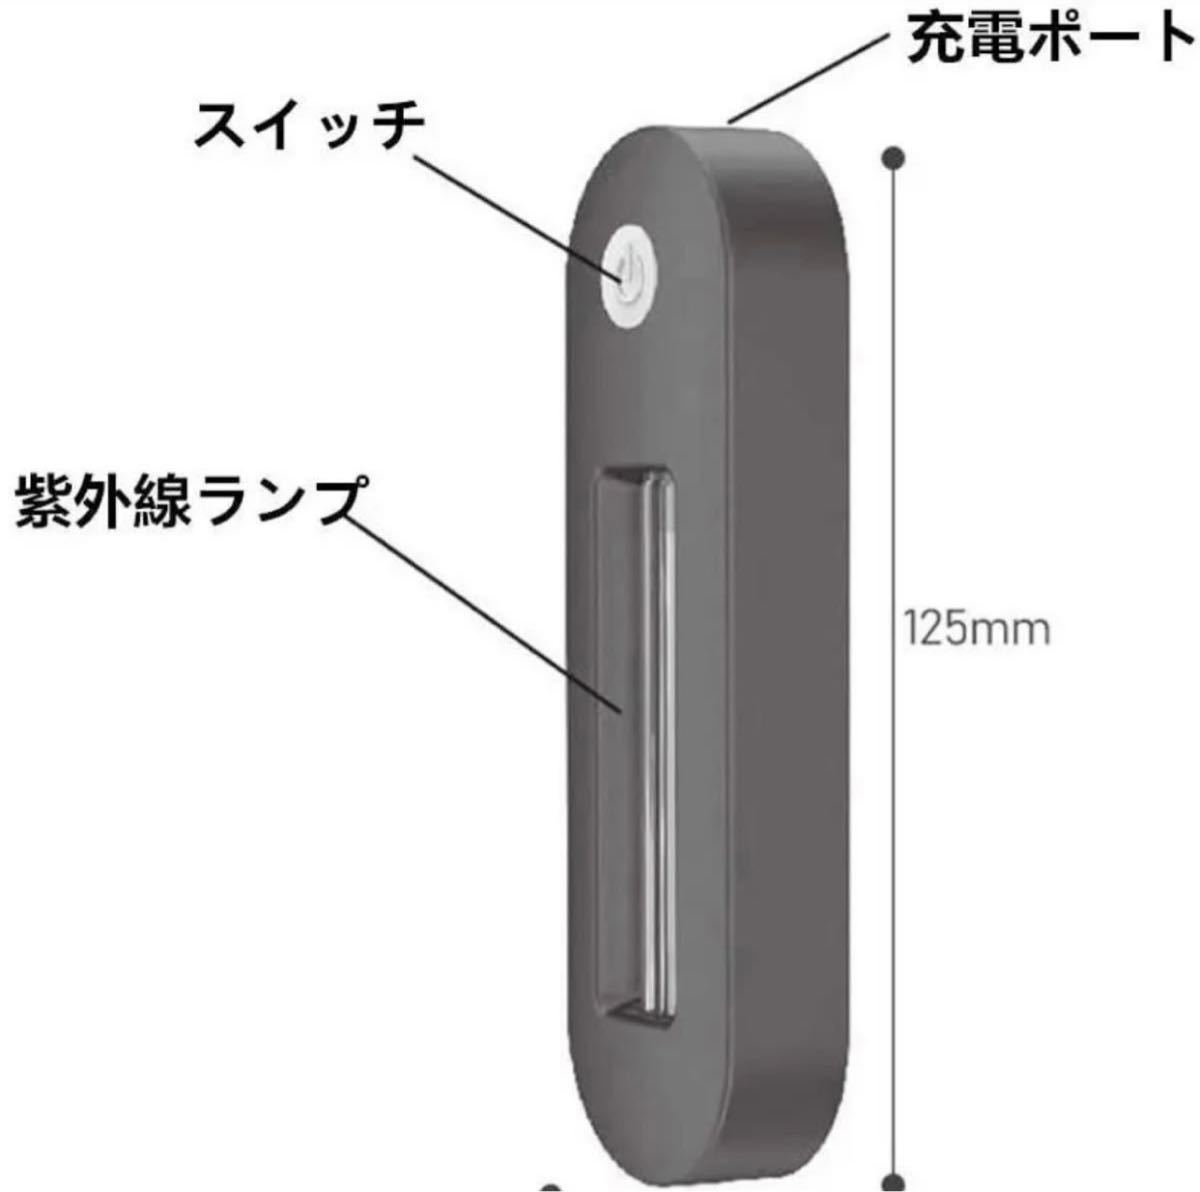 除菌ライト UV-C便器殺菌灯 除臭と消臭 PM2.5対応 小型USB充電式 サイズ125×38×18mm ワンボタン操作 